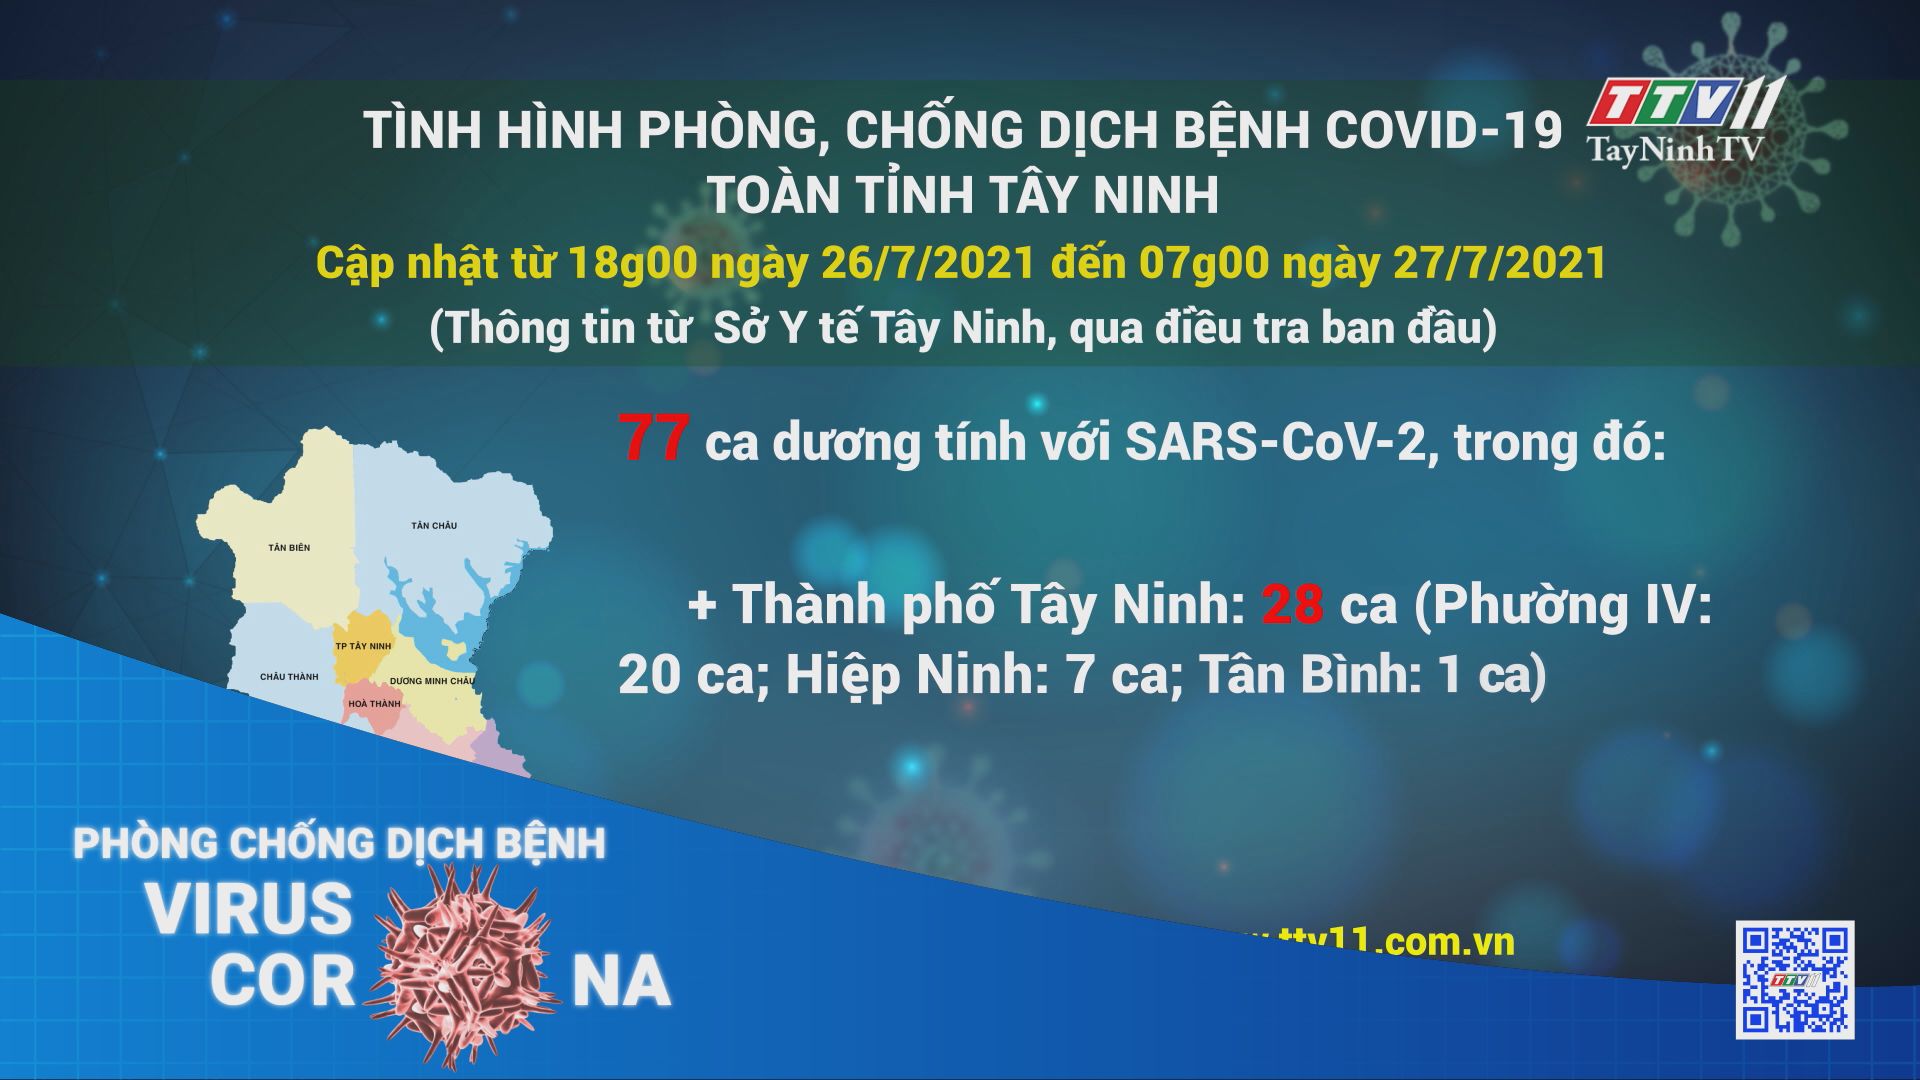 Cập nhật tình hình dịch Covid-19 trên địa bàn tỉnh Tây Ninh đến 7 giờ ngày 27/7/2021 | TayNinhTV